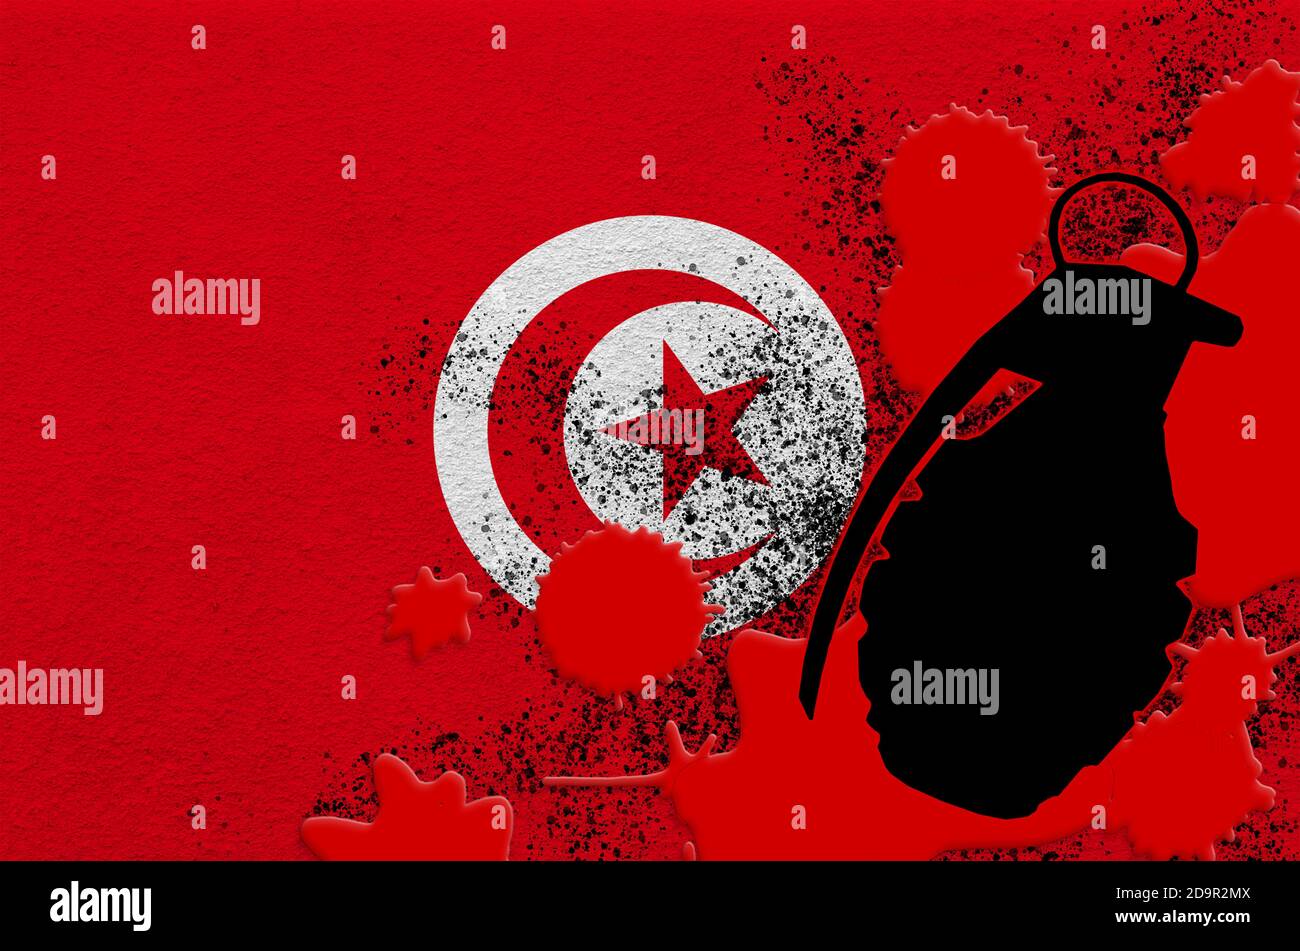 Drapeau tunisien et grenade à scories MK2 dans du sang rouge. Concept d'attaque terroriste ou d'opérations militaires avec un résultat mortel. Arme projectile dangereuse usag Banque D'Images